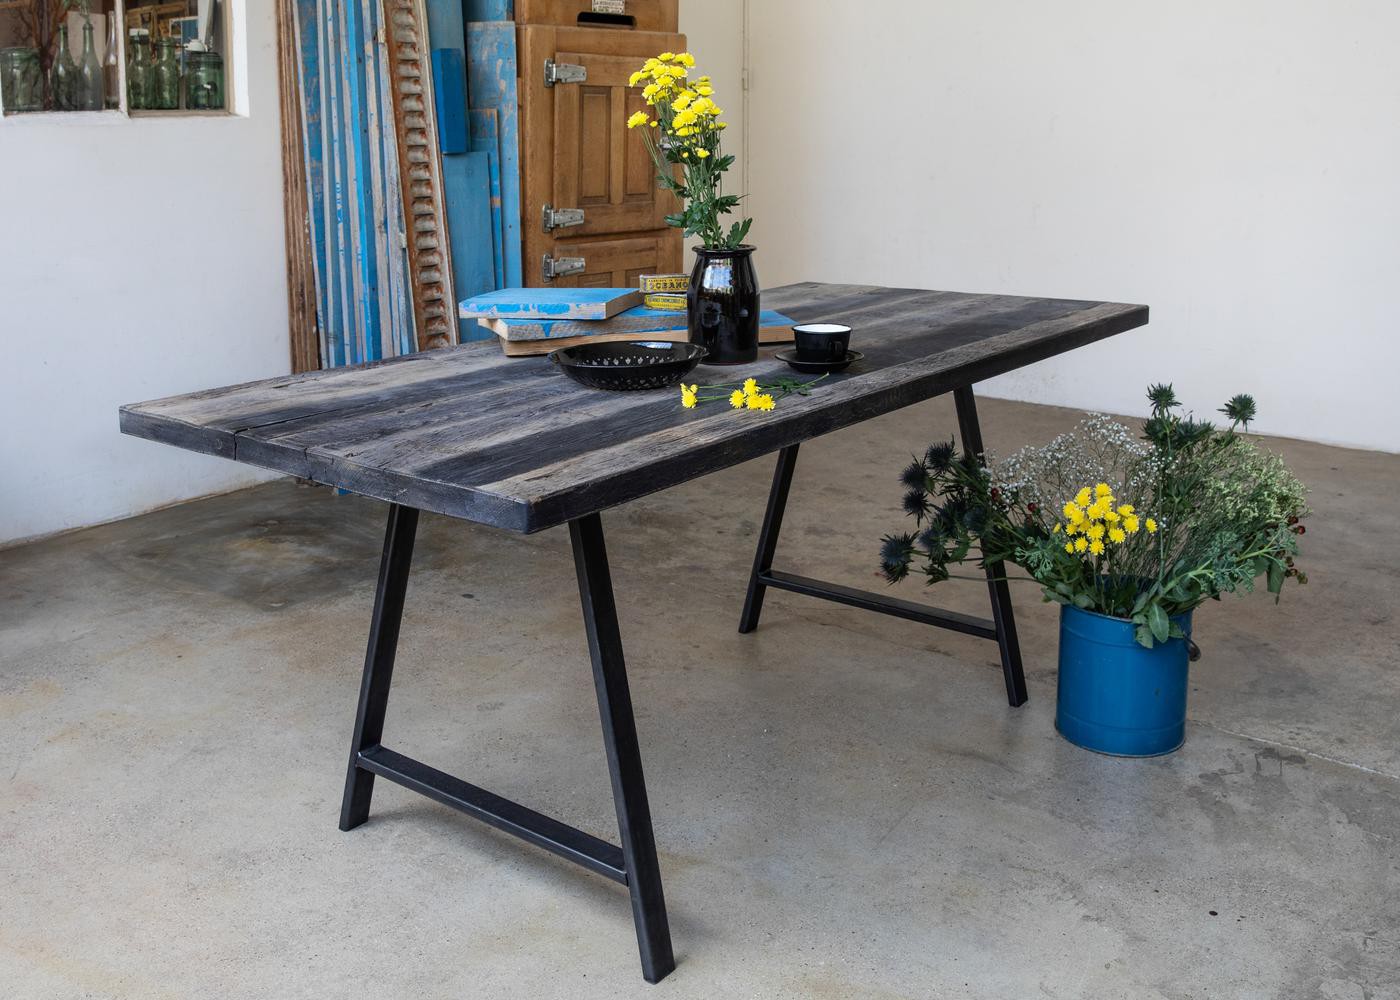 Plateau de table BADEN à partir de vieux fond de wagon chêne non raboté brut lisse, avec touches de peinture - (longueur max 2600mm)